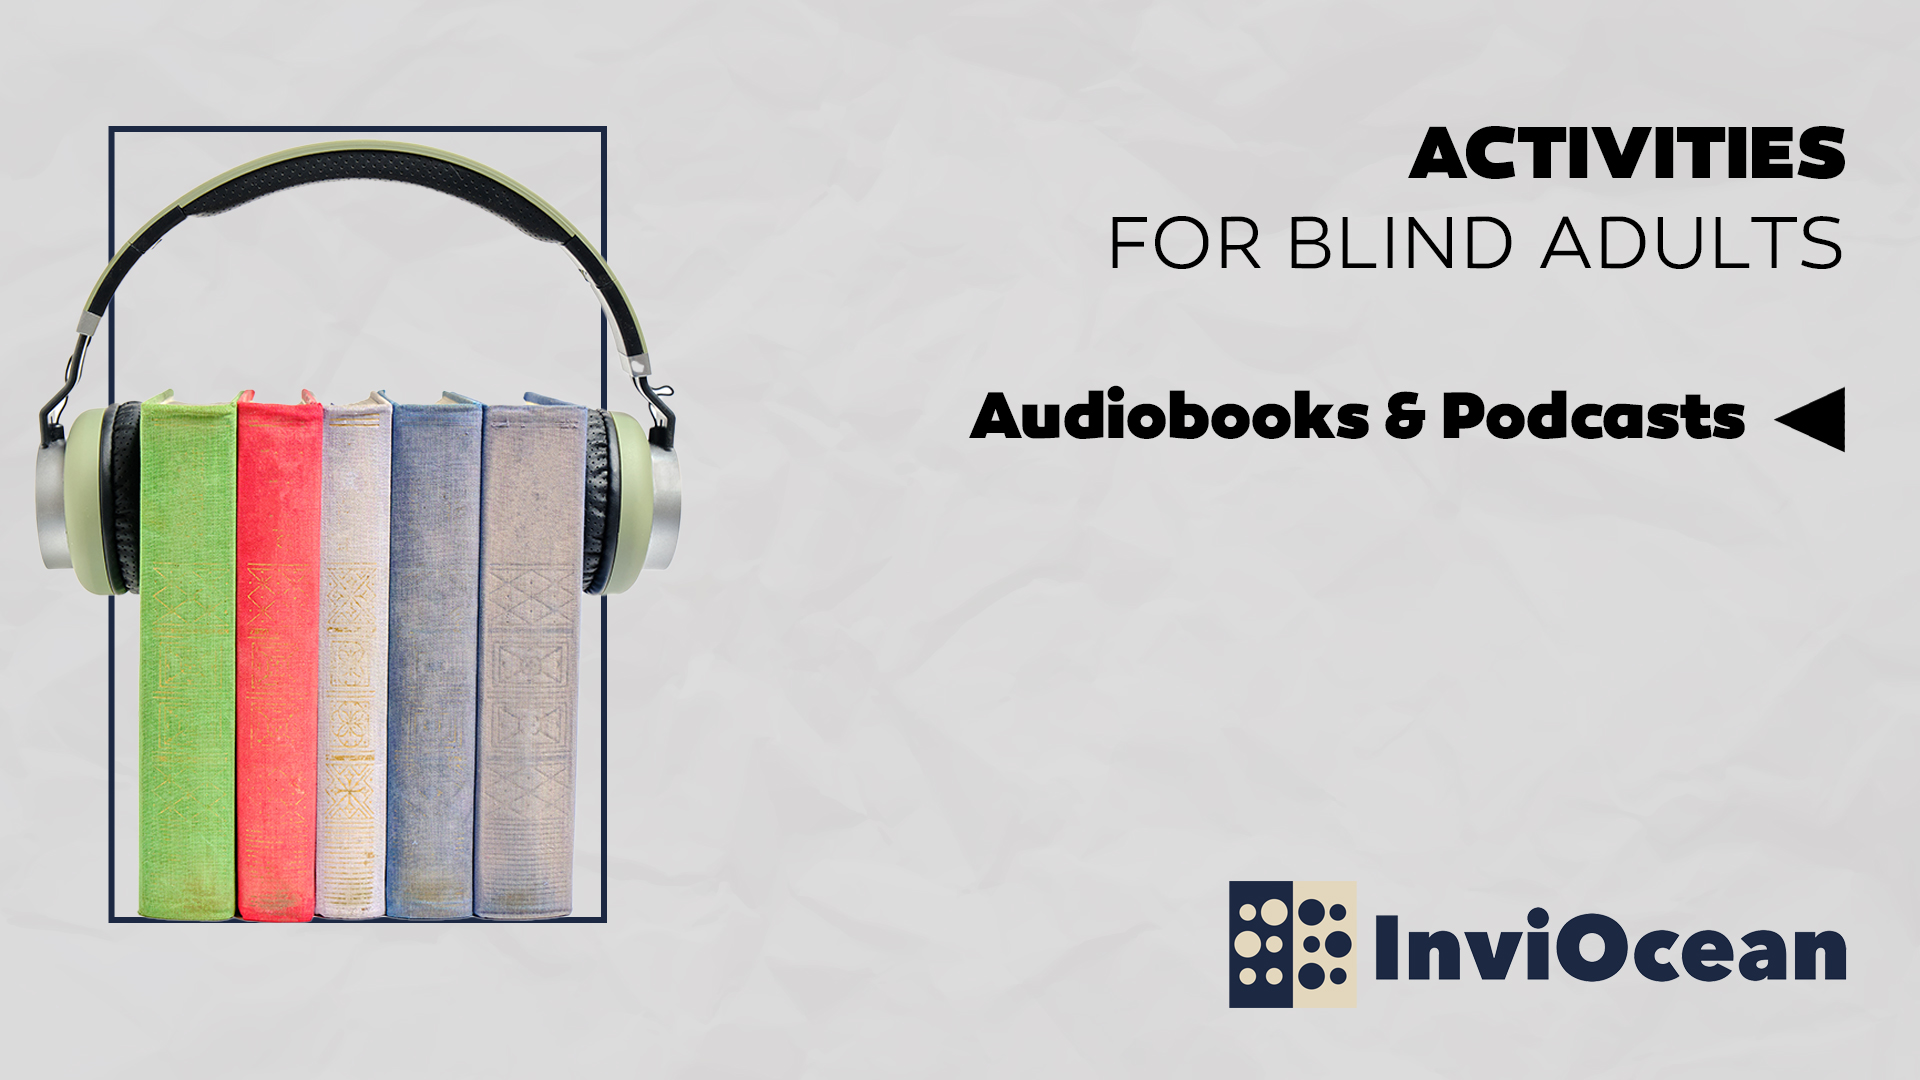 Audiobooks & Podcasts